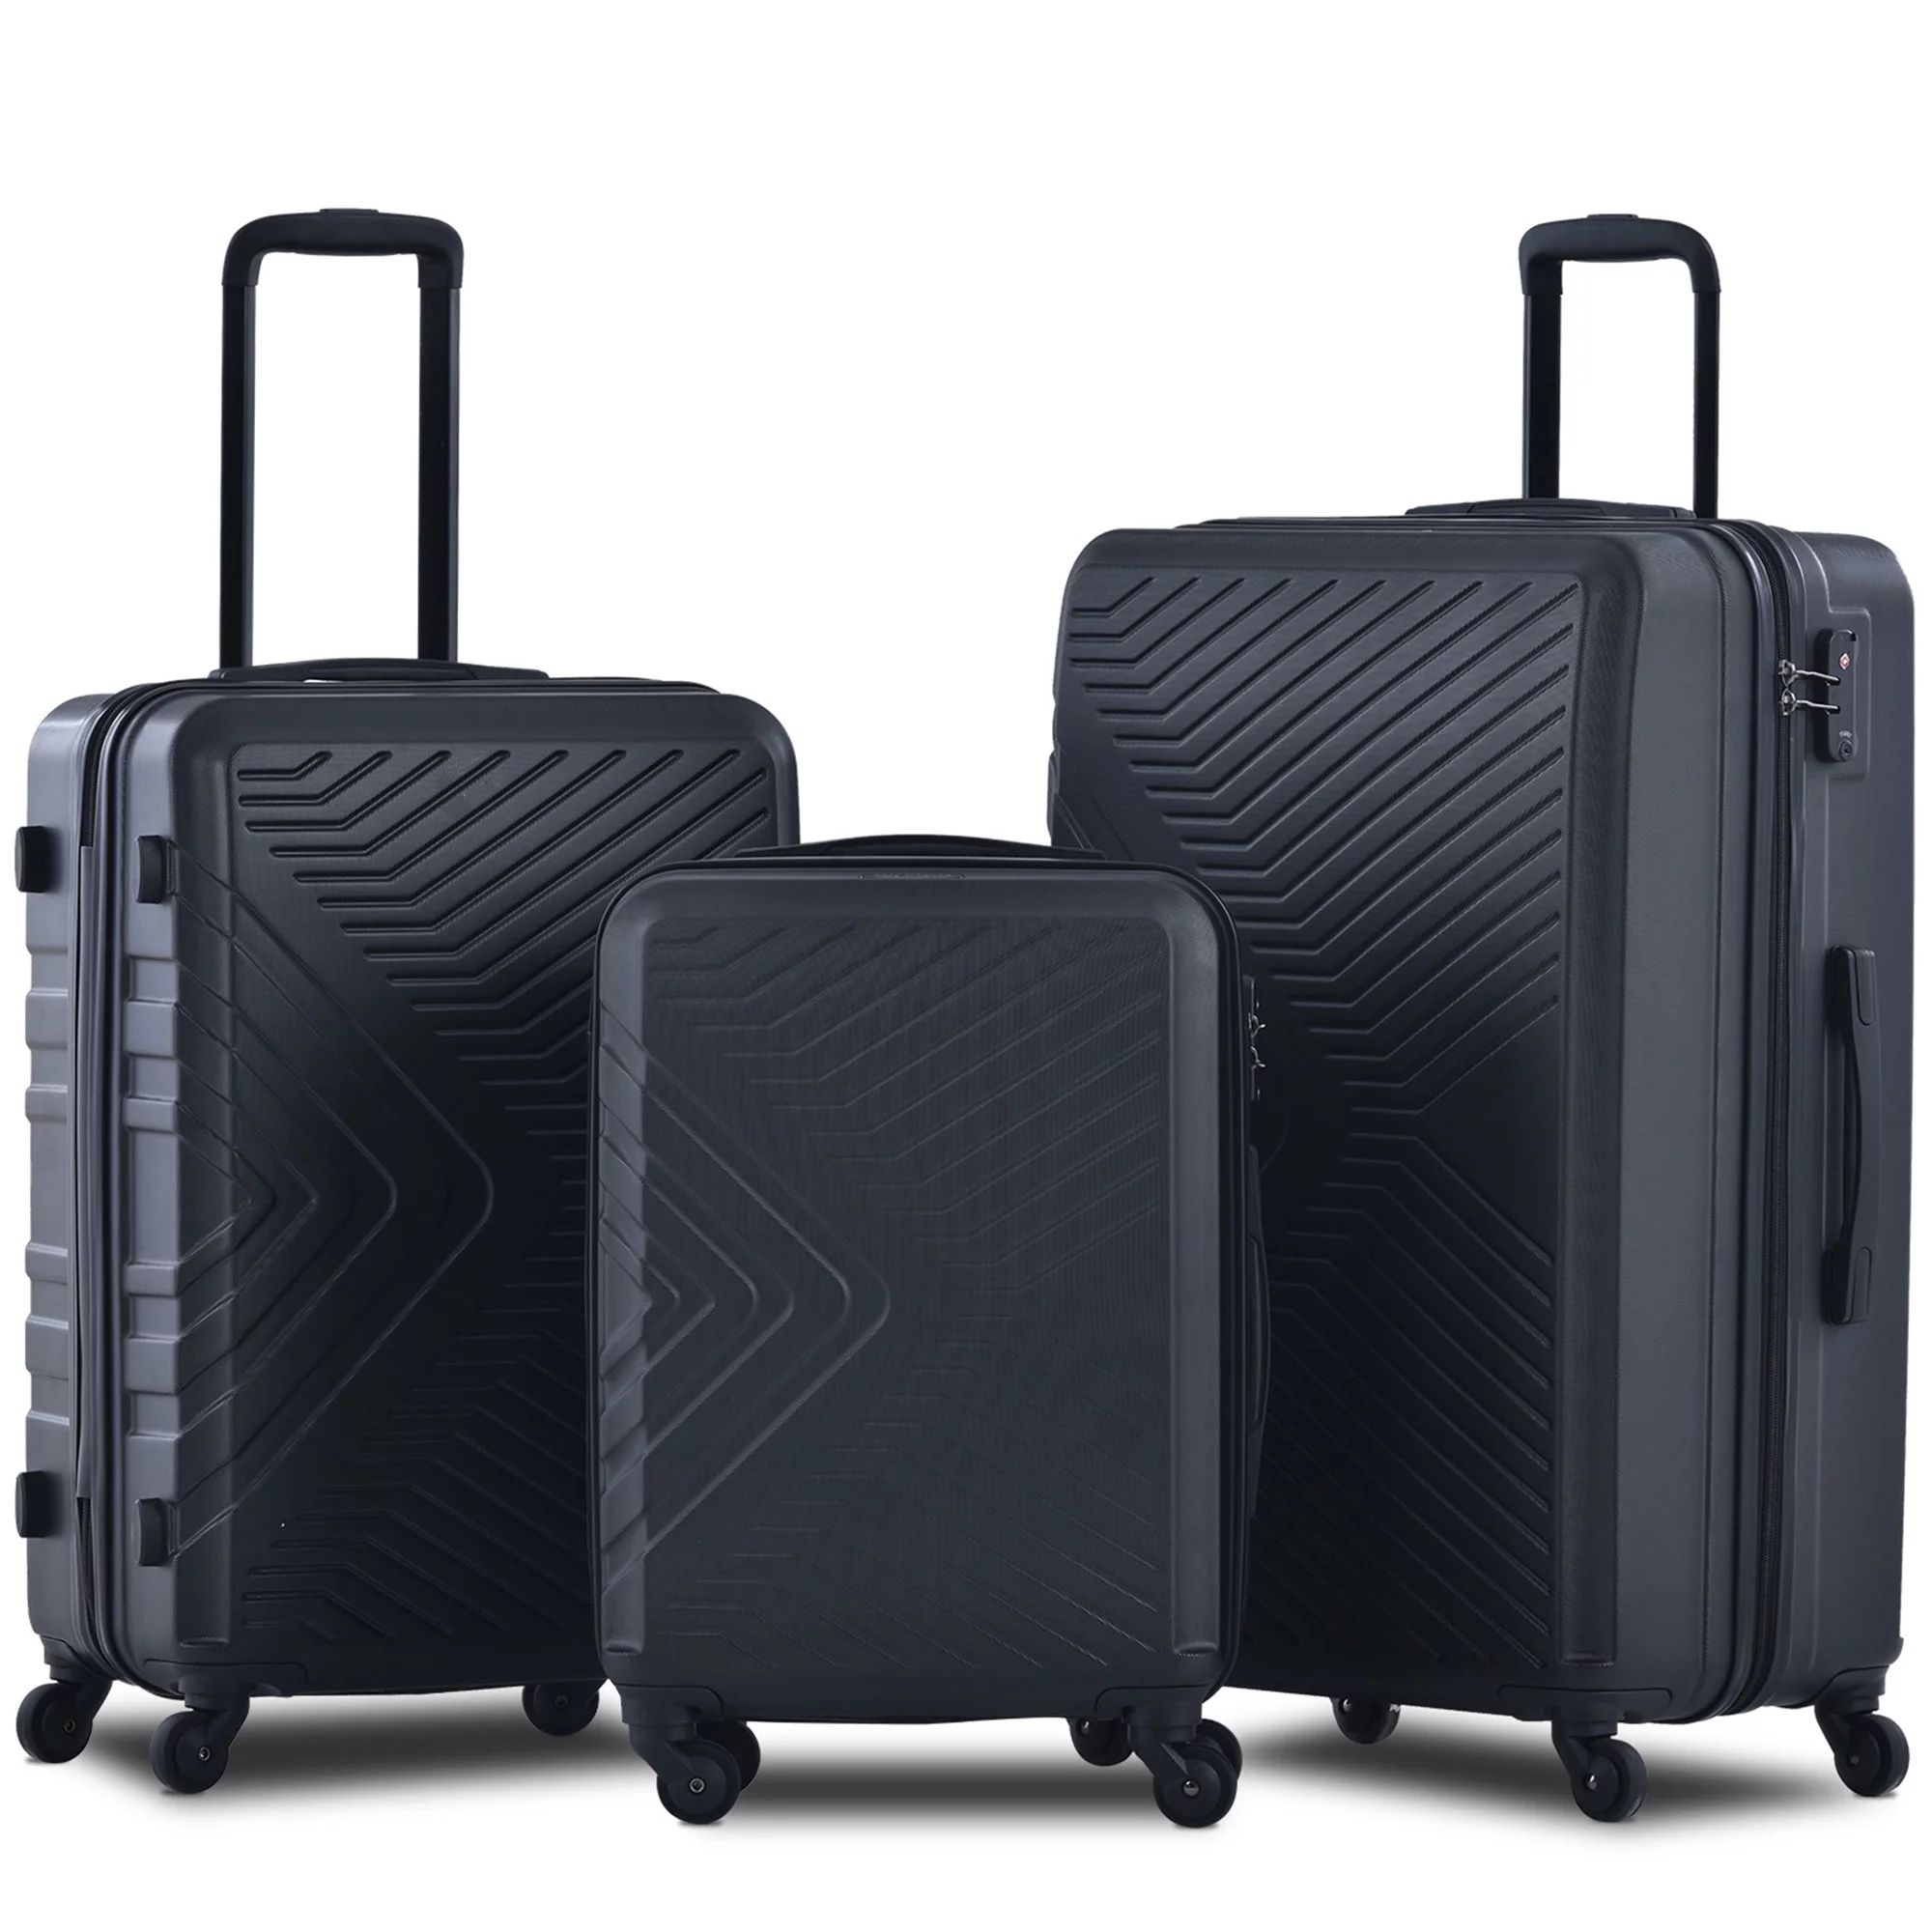 Travelhouse 3 Piece Hardshell Luggage Set Hardside Lightweight Suitcase with TSA Lock Spinner Whe... | Walmart (US)